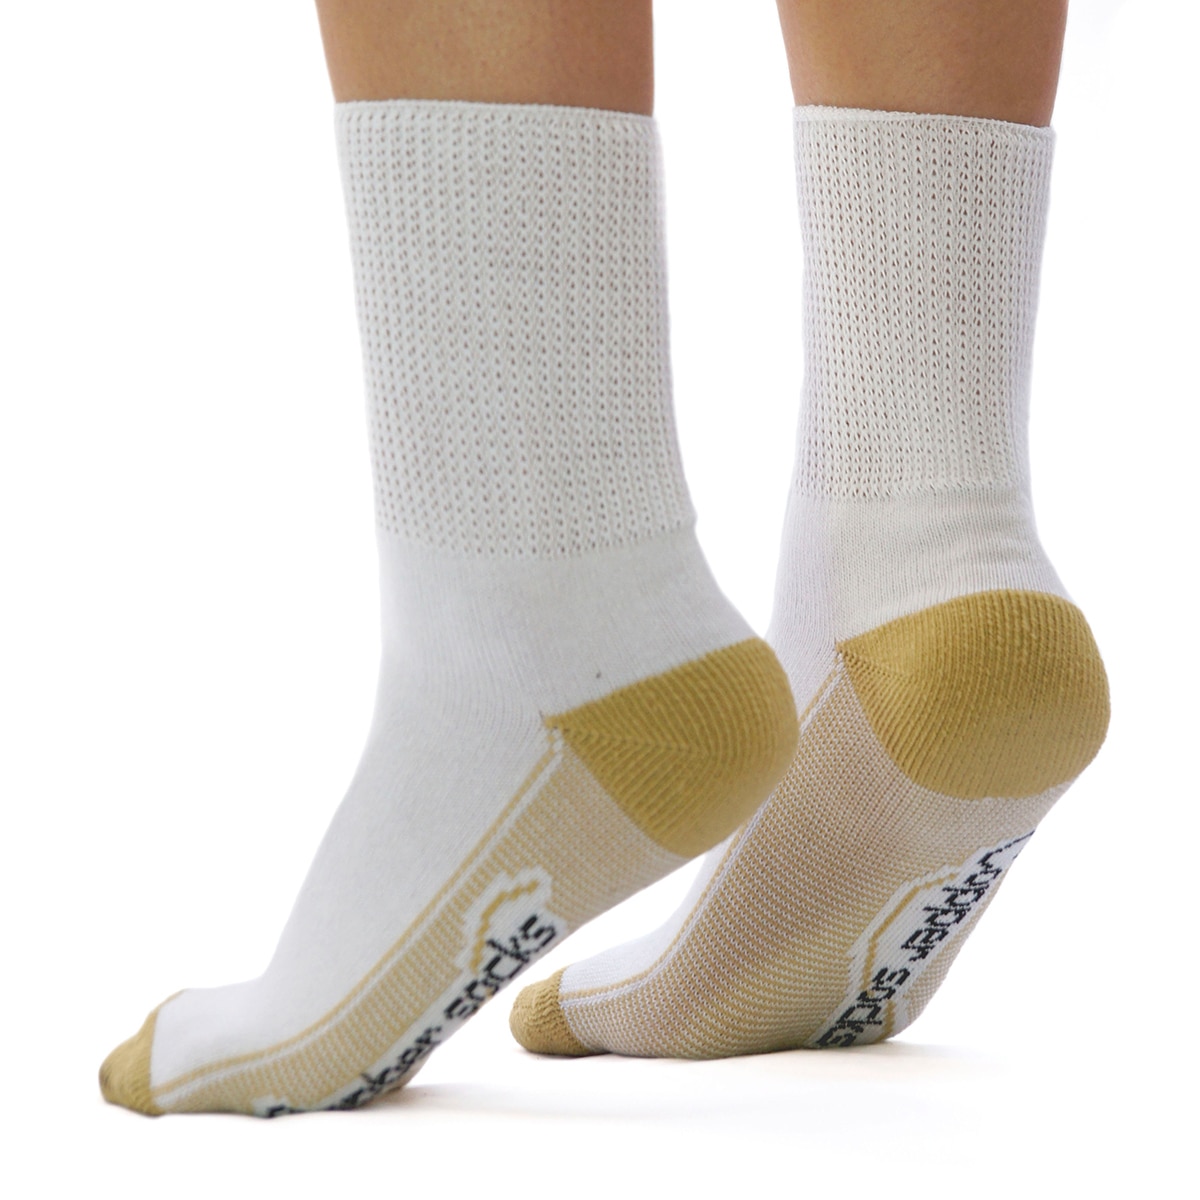 Copper Socks, Calcetines Cortos para Diabéticos (3 Pares) Color Beige Talla Grande